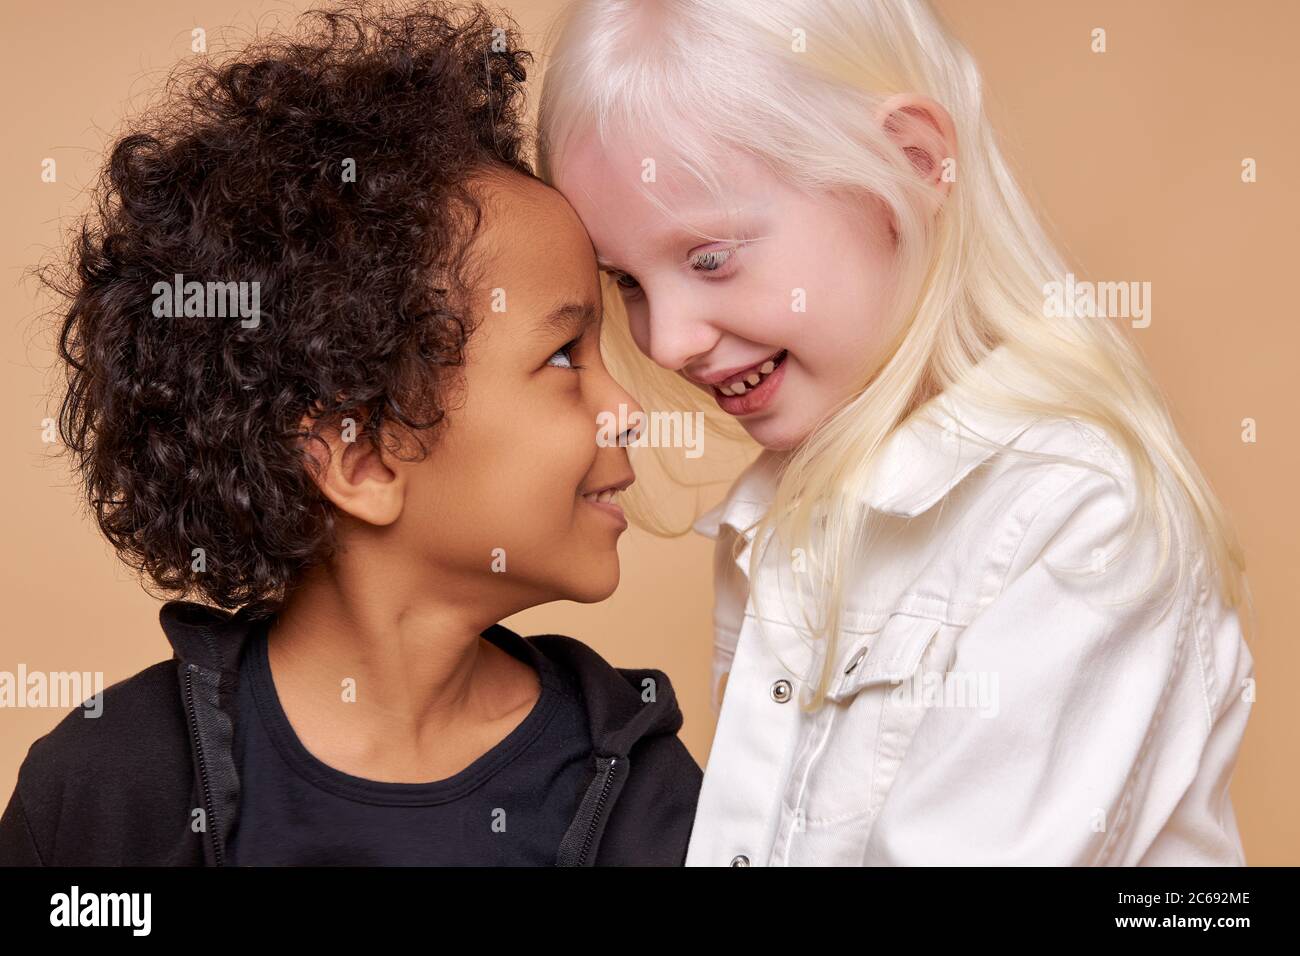 une amitié étroite entre deux enfants de différentes nationalités, belle albinos caucasienne fille et africain garçon avec des cheveux bouclés, ils sont embrassant Banque D'Images